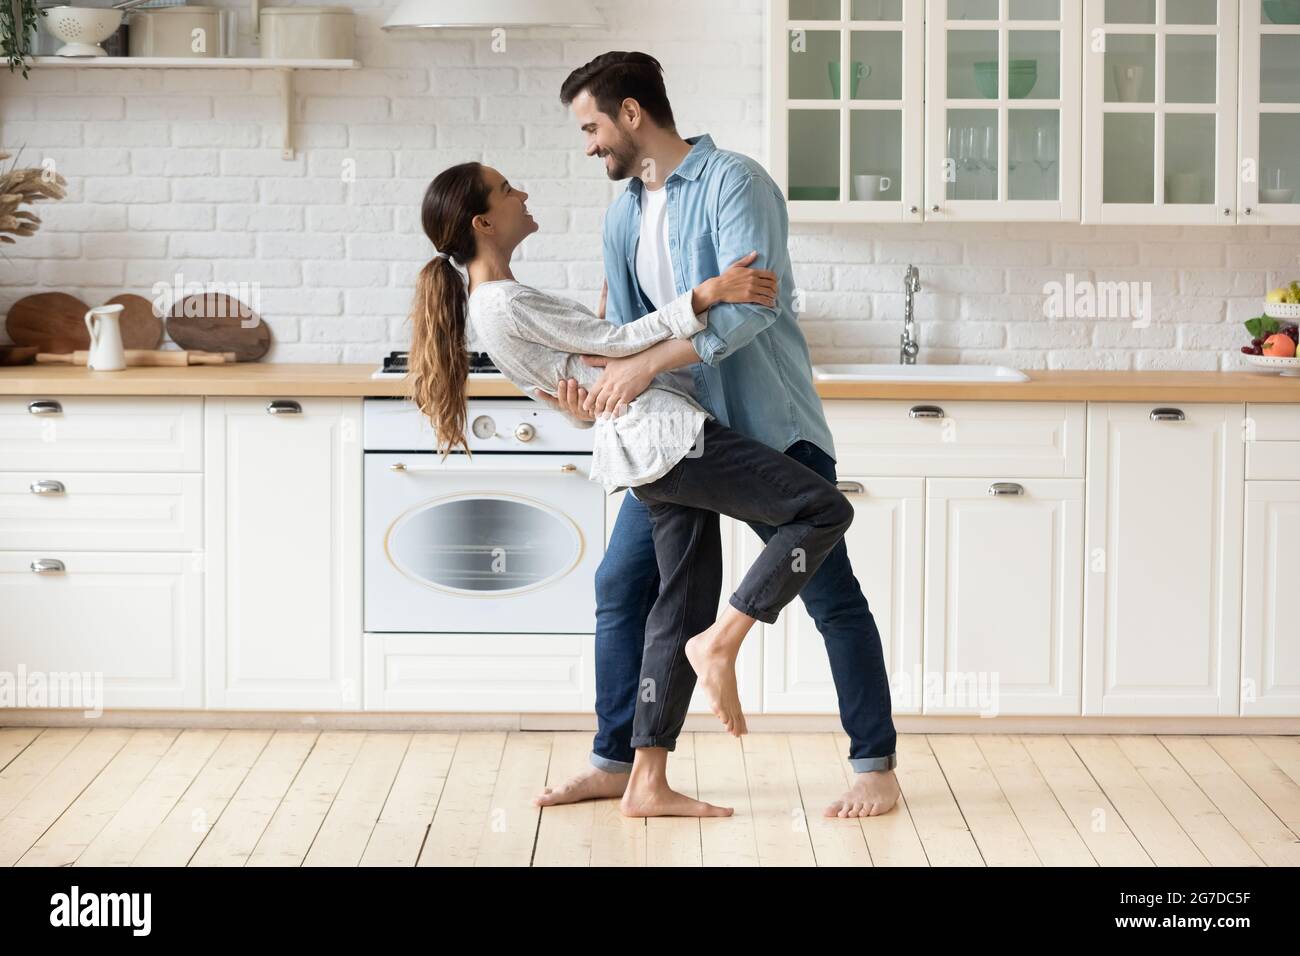 Das junge Paar feiert in der modernen gemütlichen Küche barfuß hauswarmtanzend Stockfoto